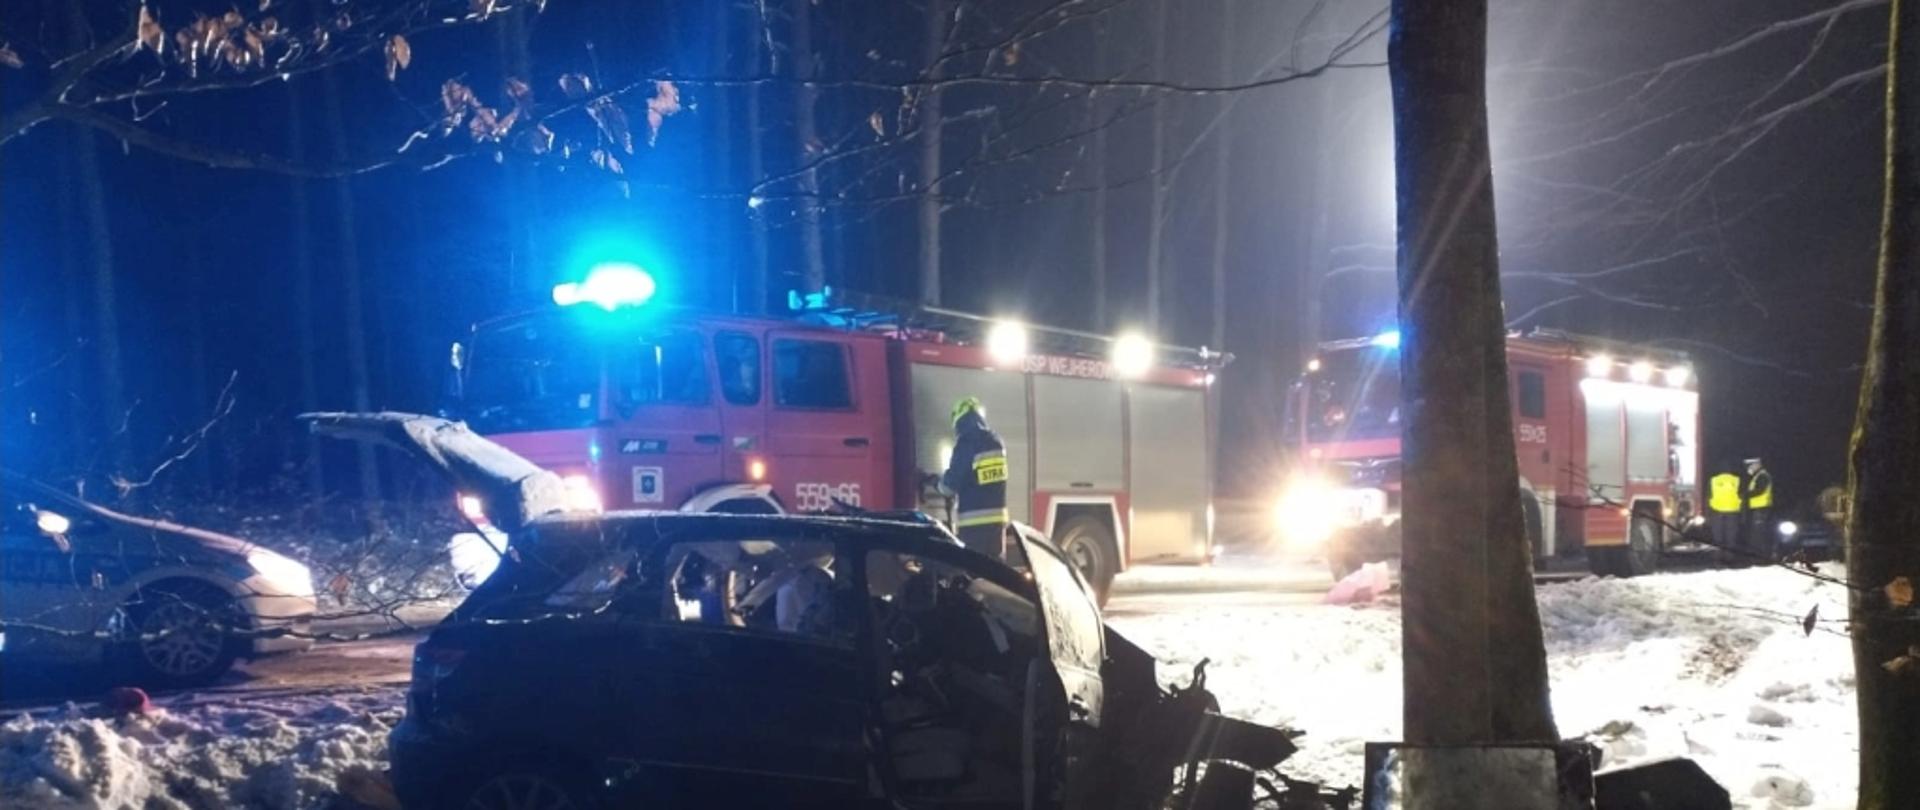 na zdjęciu widoczne jest miejsce wypadku drogowego, pojazd osobowy który uderzył w drzewa i wozy straży pożarnej